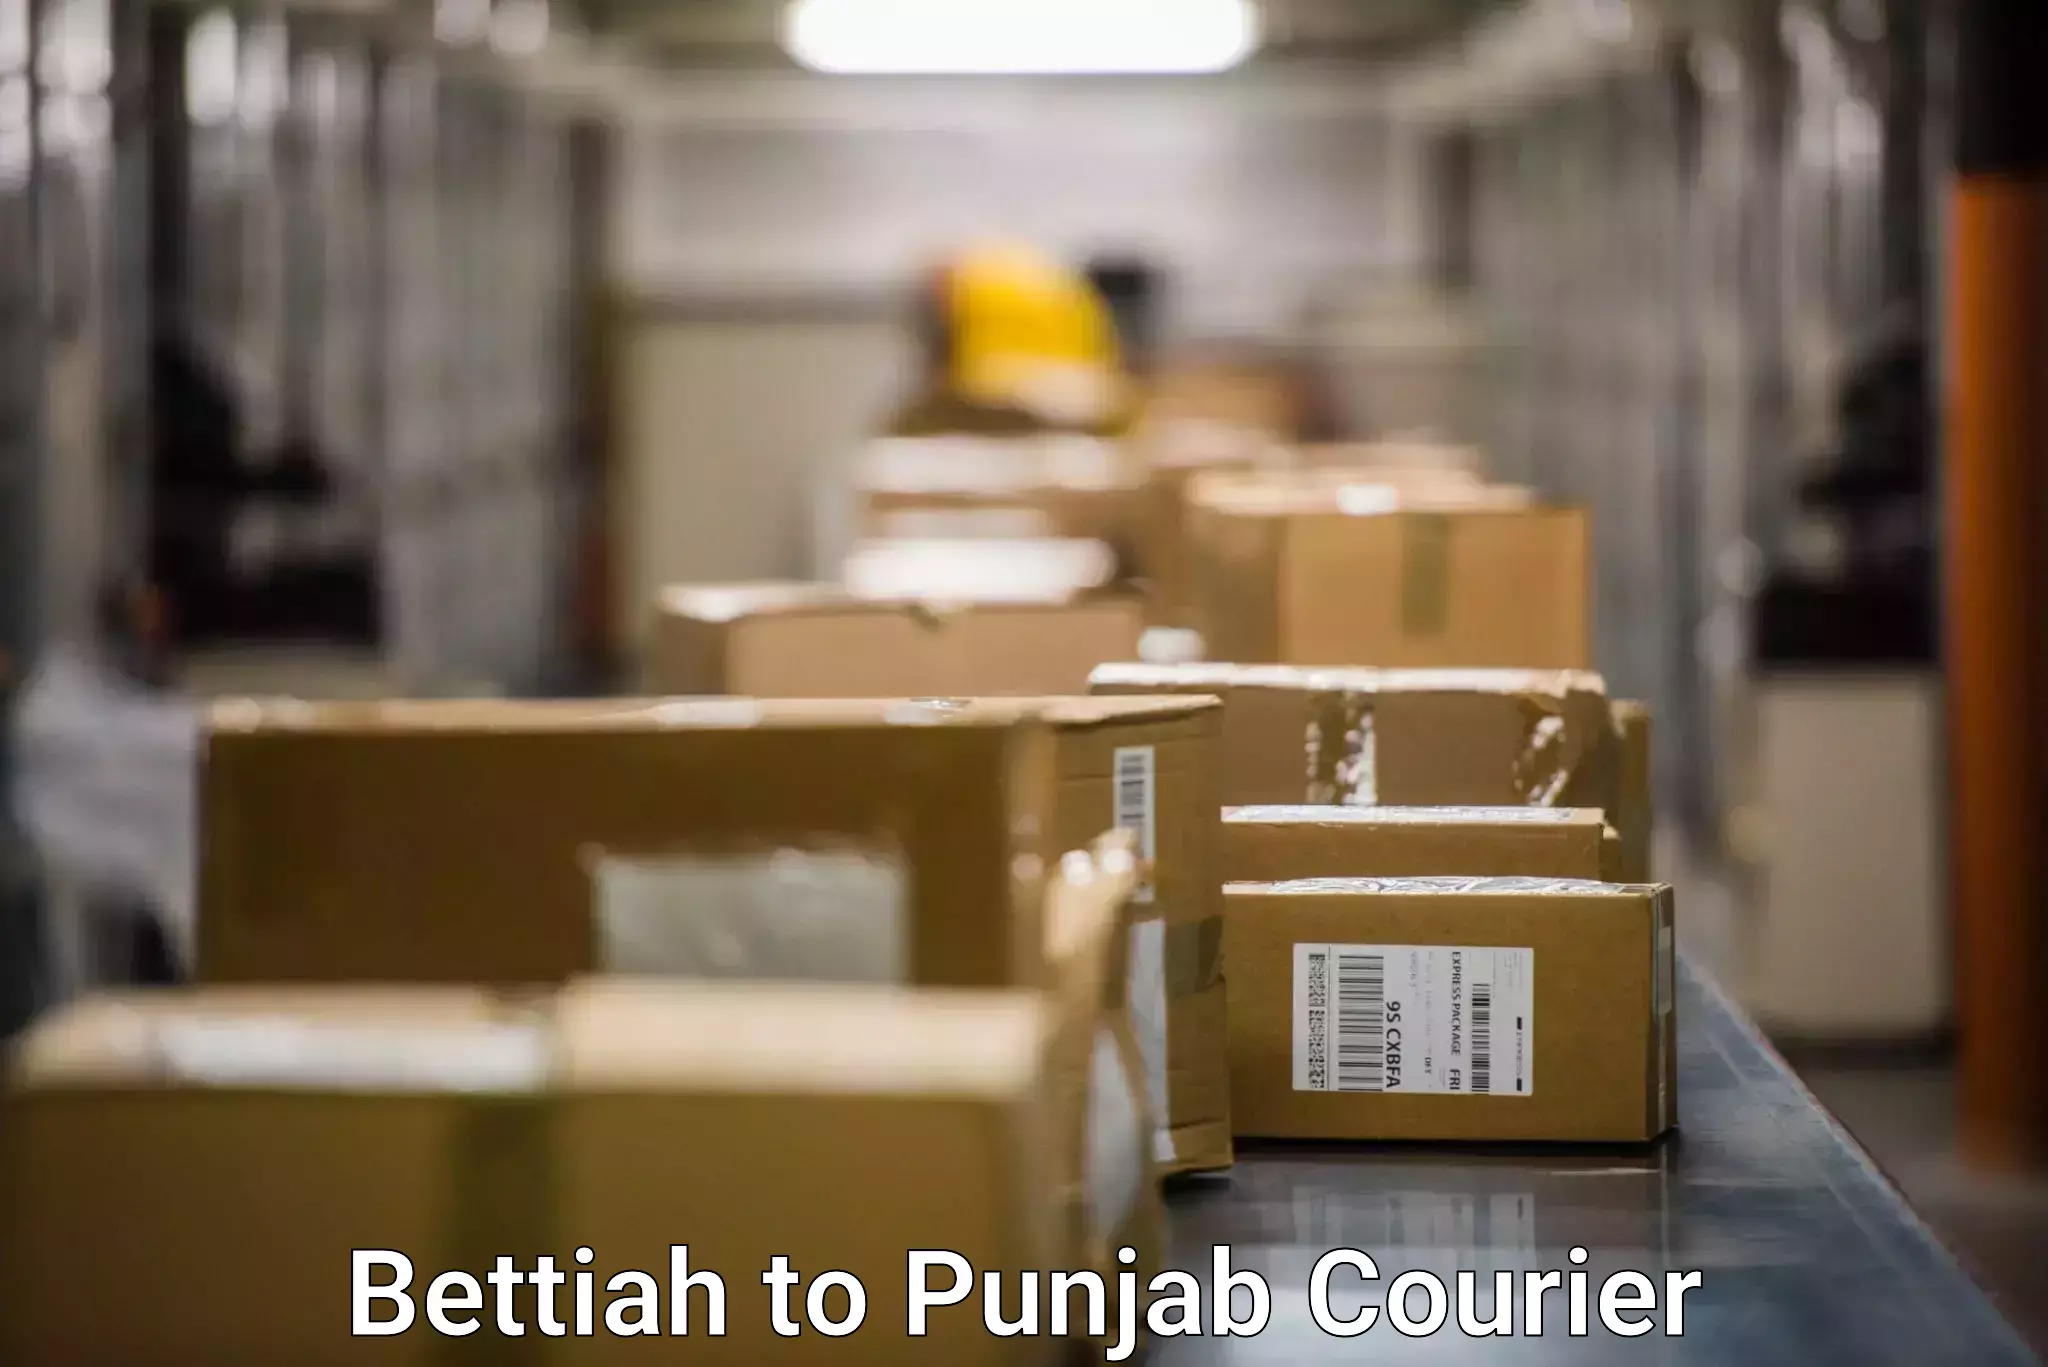 Modern courier technology Bettiah to Jalandhar